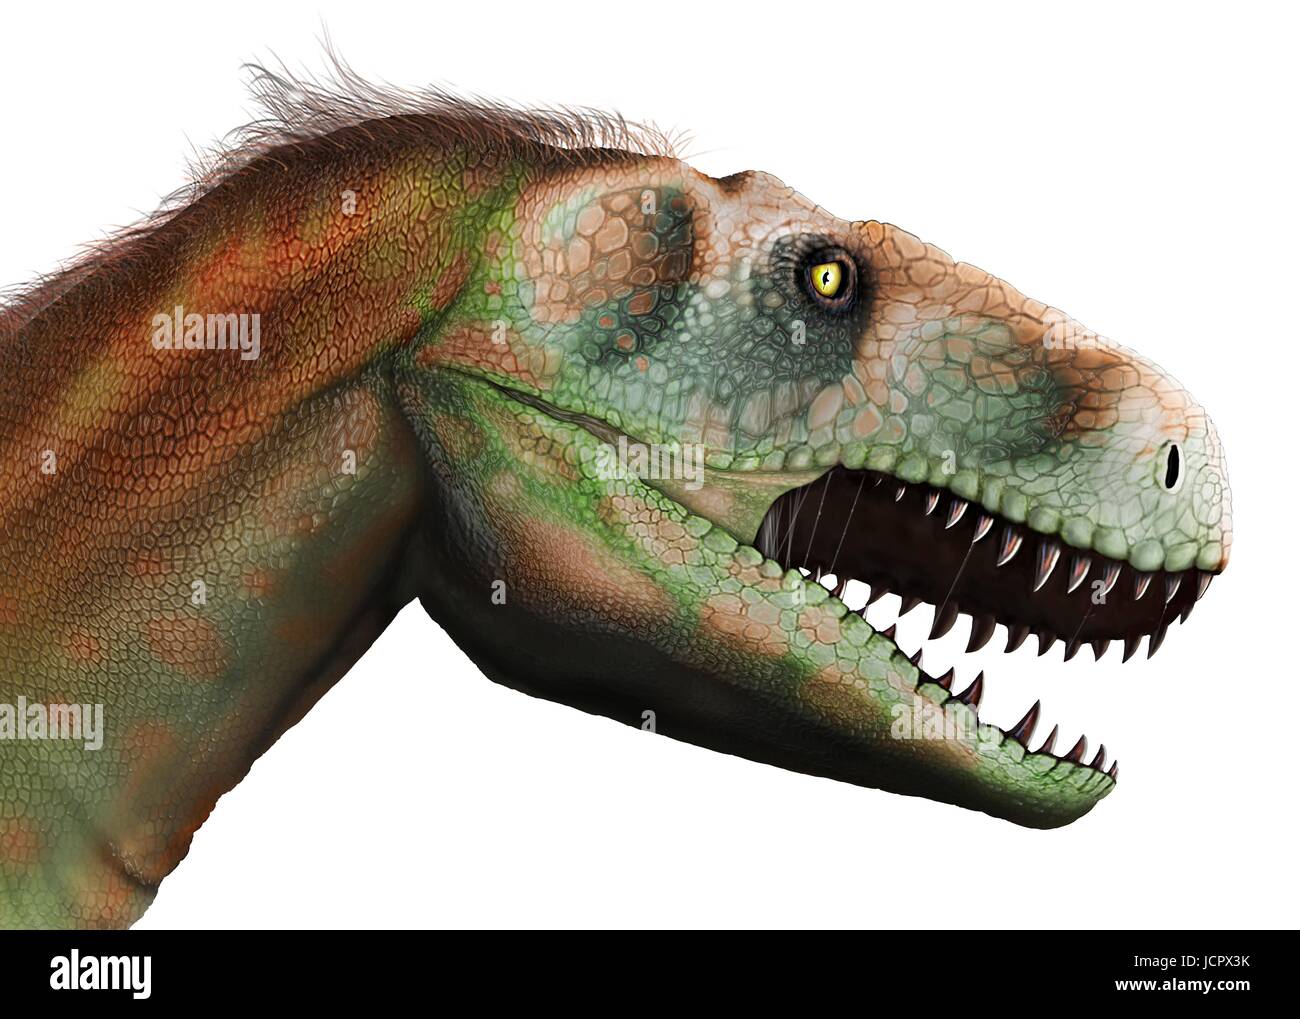 Studio di testa megalosaurus.Megalosaurus è genere estinto il mangiar carne dinosauri,theropods,dal Medio giurassico in terra€™s storia,166 milioni di anni fa.It ha vissuto in quello che è oggi il sud dell'Inghilterra.Il primo fossile di dinosauro mai trovata,come molto tempo fa come 1676,era probabilmente un frammento osseo della coscia che apparteneva a Megalosaurus.Questo animale era di dimensioni medie theropod,6 a 7 m di lunghezza con un peso di circa una tonnellata.La comprensione moderna è che megalosaurus potrebbe essere stato coperto di peluria piume,particolarmente lungo il suo ventre indietro. Foto Stock